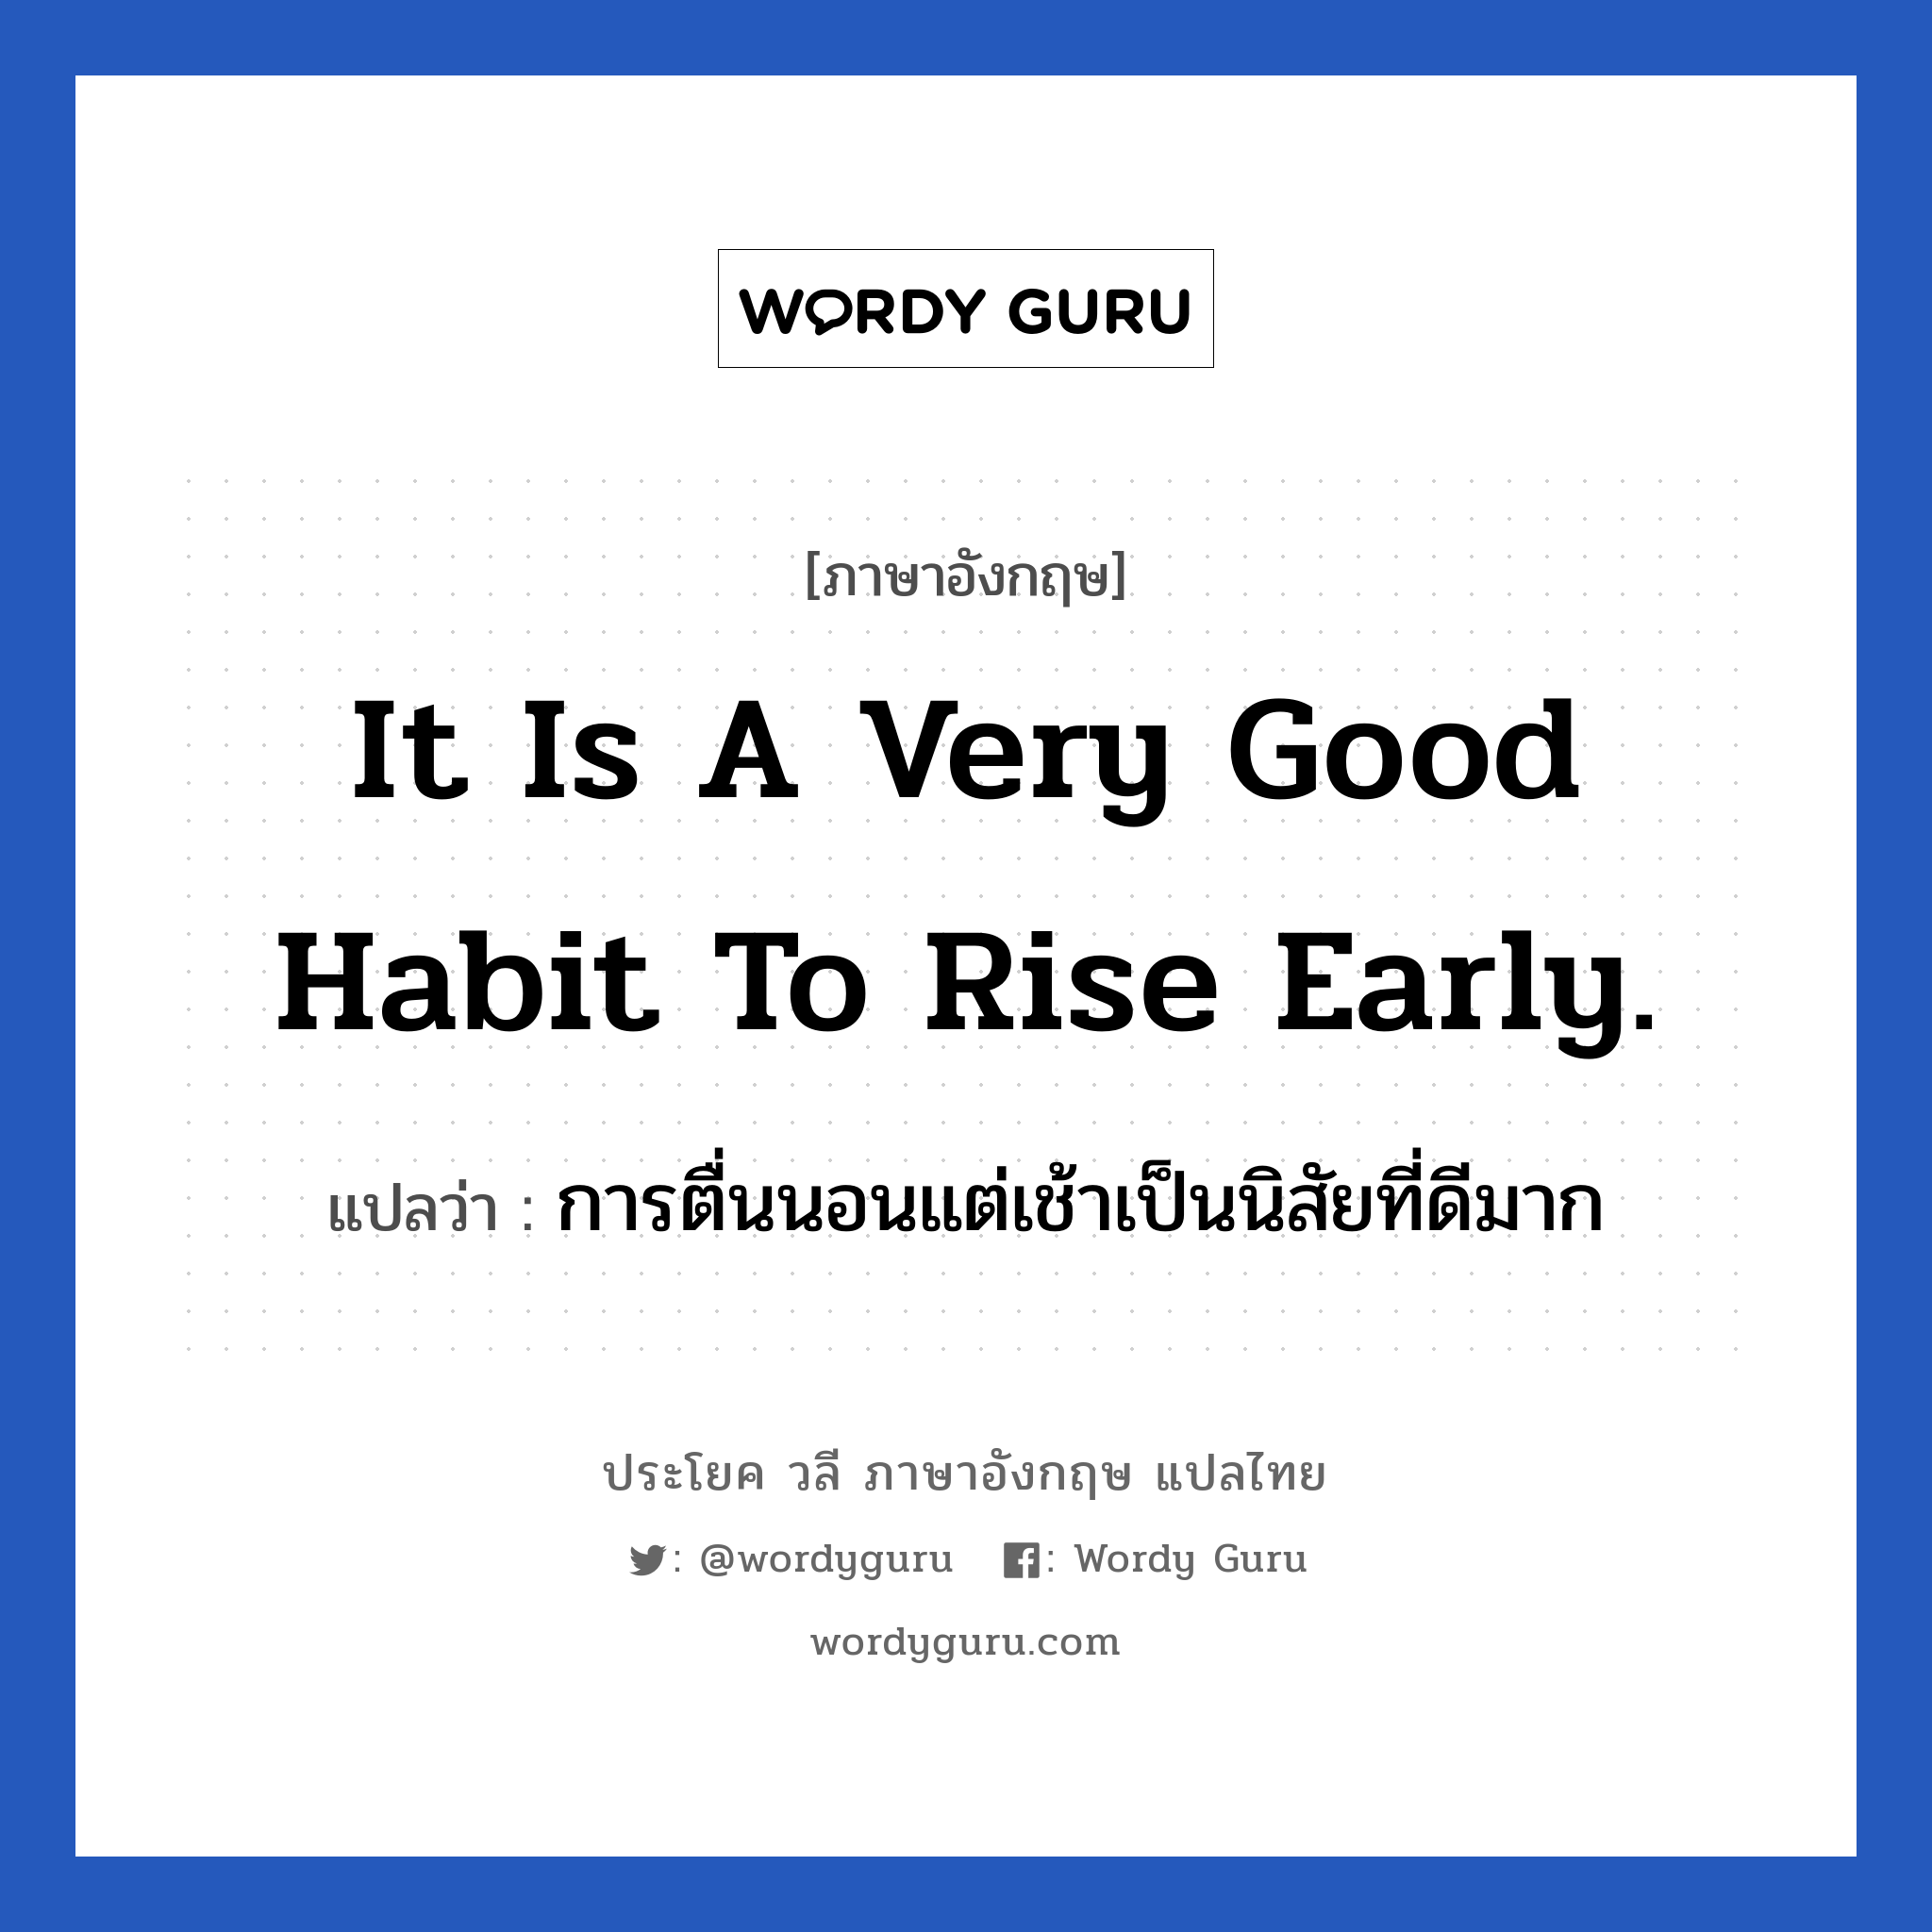 It is a very good habit to rise early. แปลว่า? เป็นประโยคในกลุ่มประเภท ในห้องนอน, วลีภาษาอังกฤษ It is a very good habit to rise early. แปลว่า การตื่นนอนแต่เช้าเป็นนิสัยที่ดีมาก หมวด ในห้องนอน